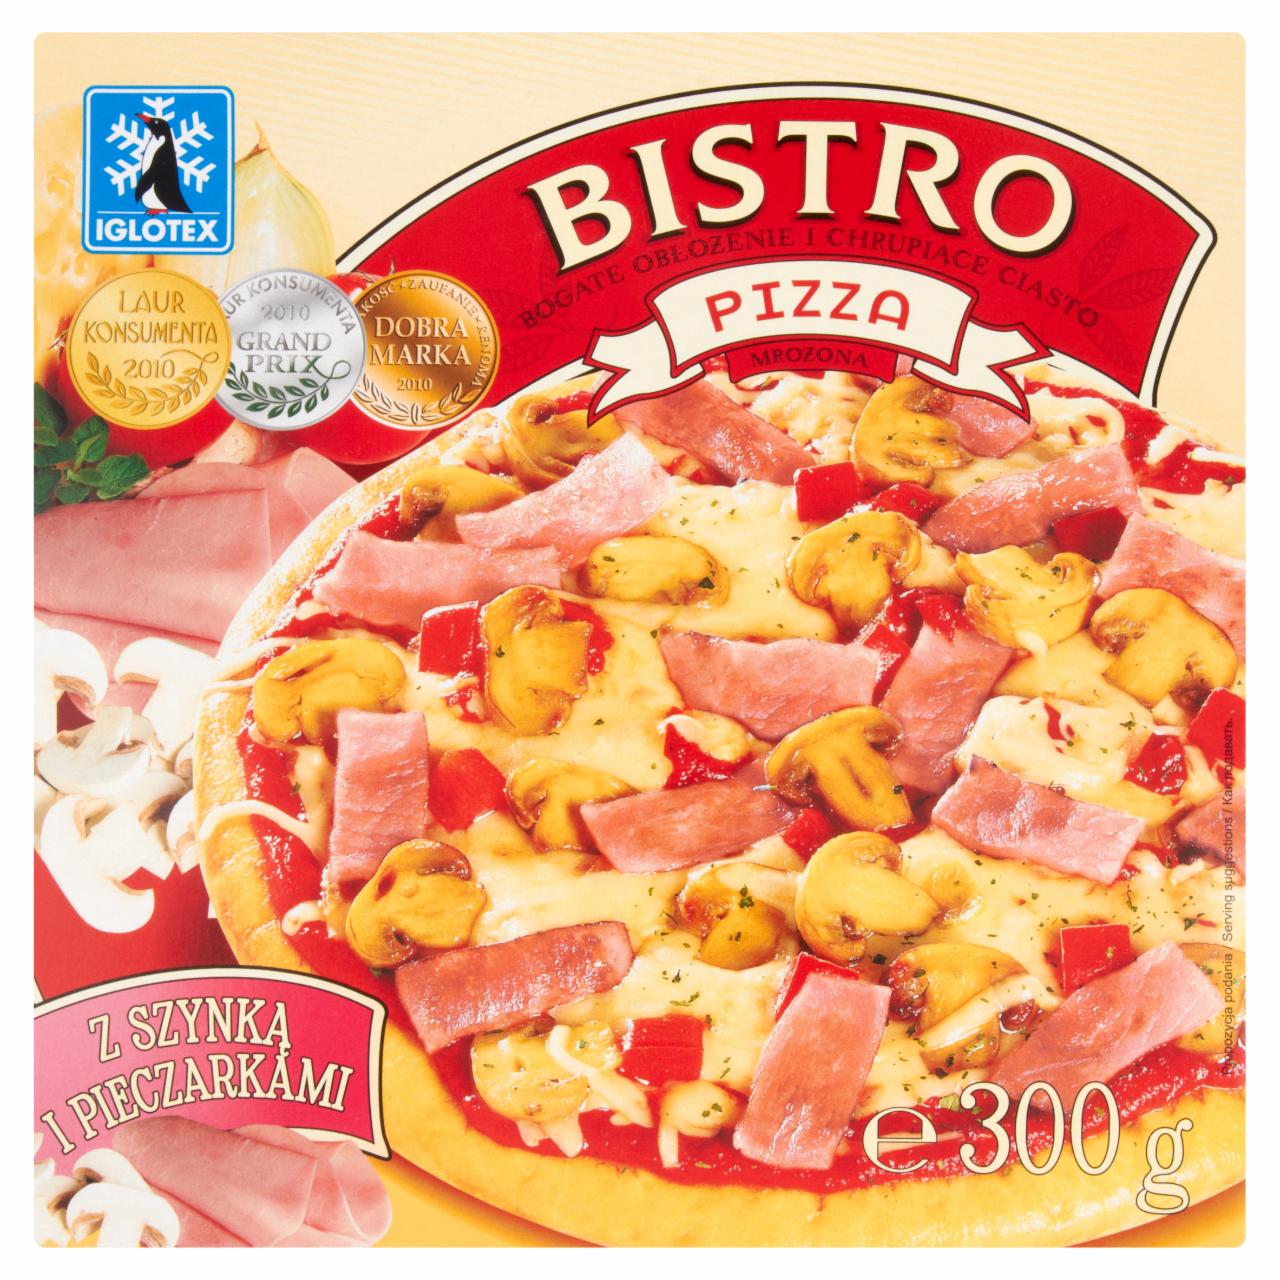 Zdjęcia - Bistro Pizza mrożona z szynką i pieczarkami Iglotex